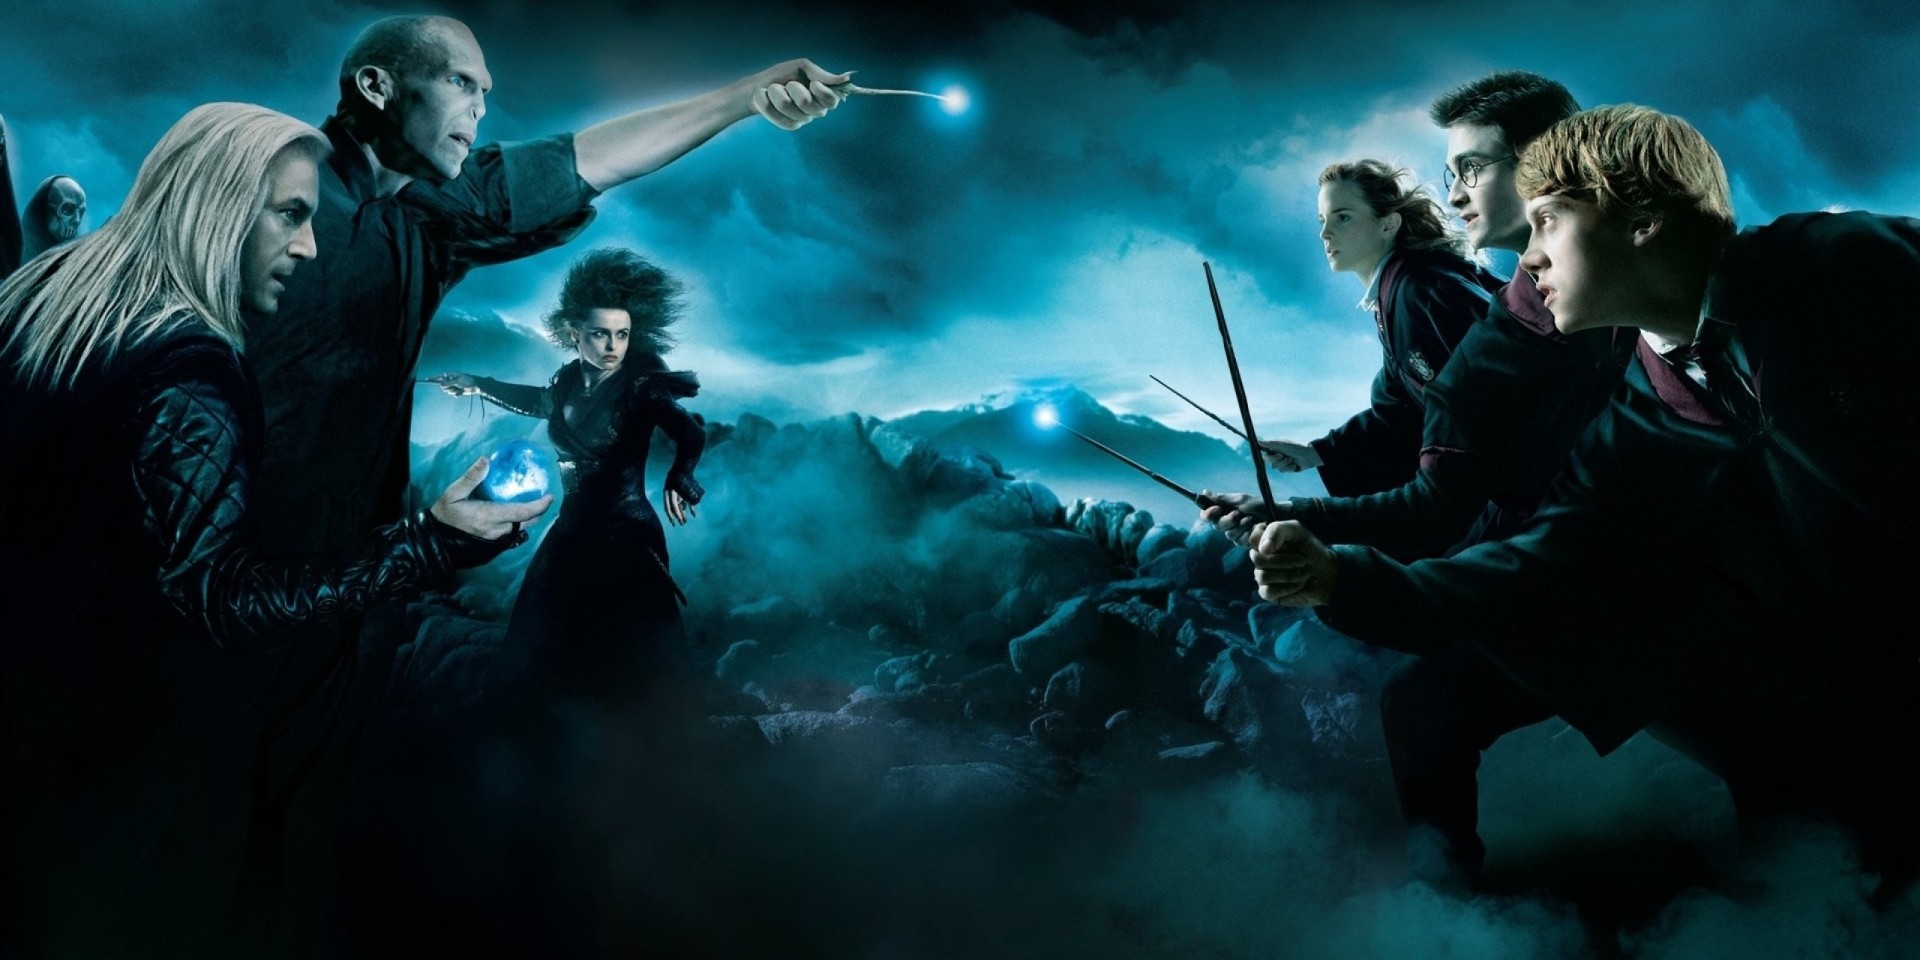 Is het de moeite om Harry Potter in 4DX te bekijken?